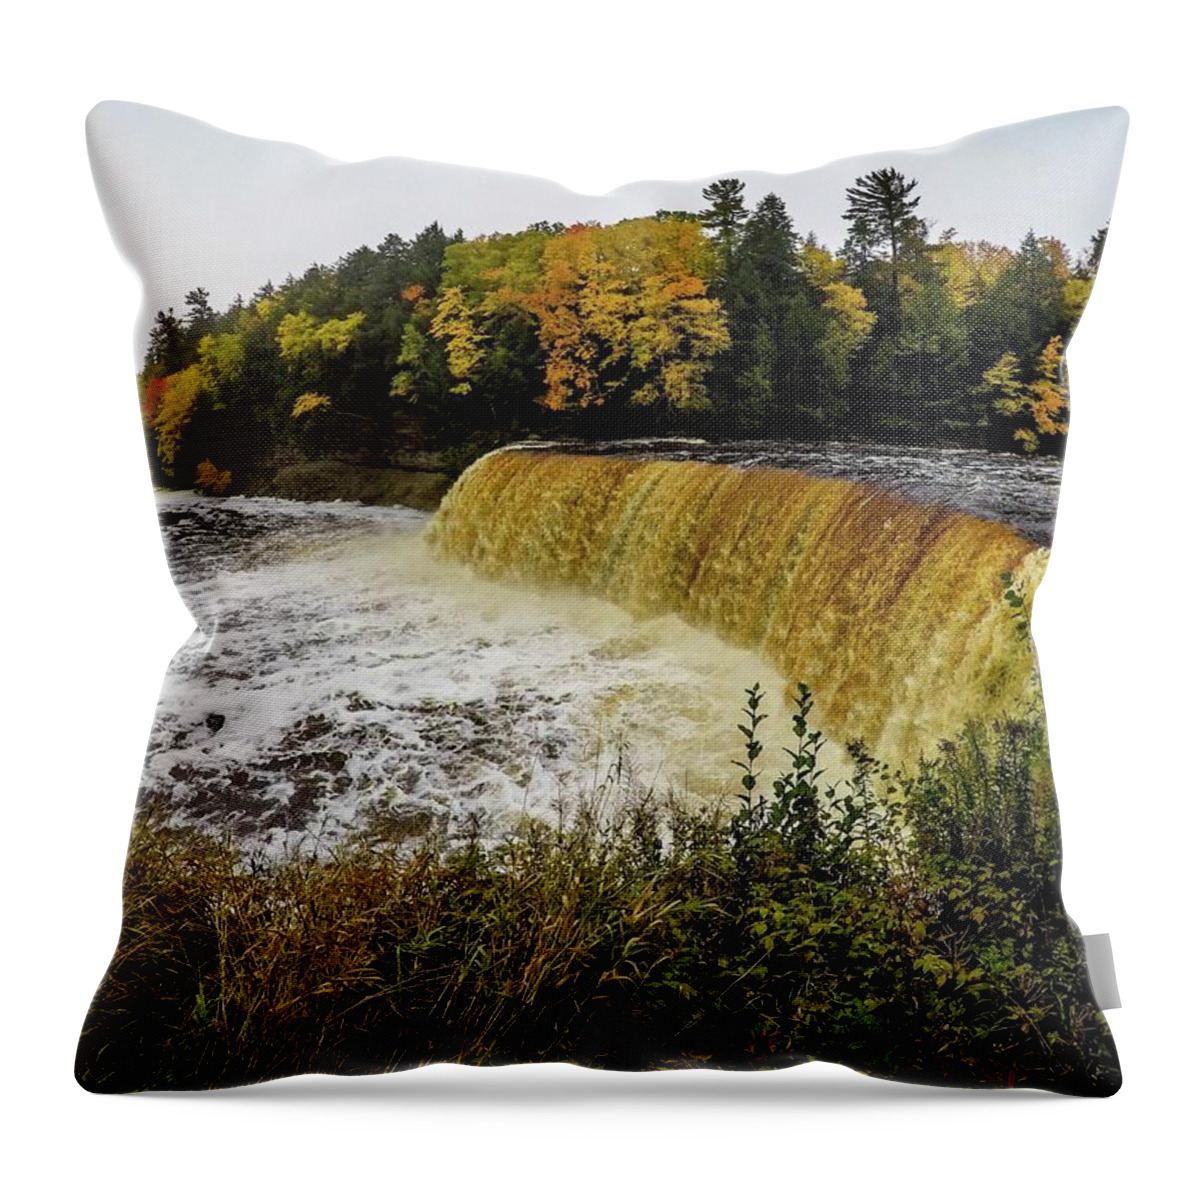 Tahquamenon Falls Throw Pillow featuring the photograph Tahquamenon Falls G0653263 by Michael Thomas